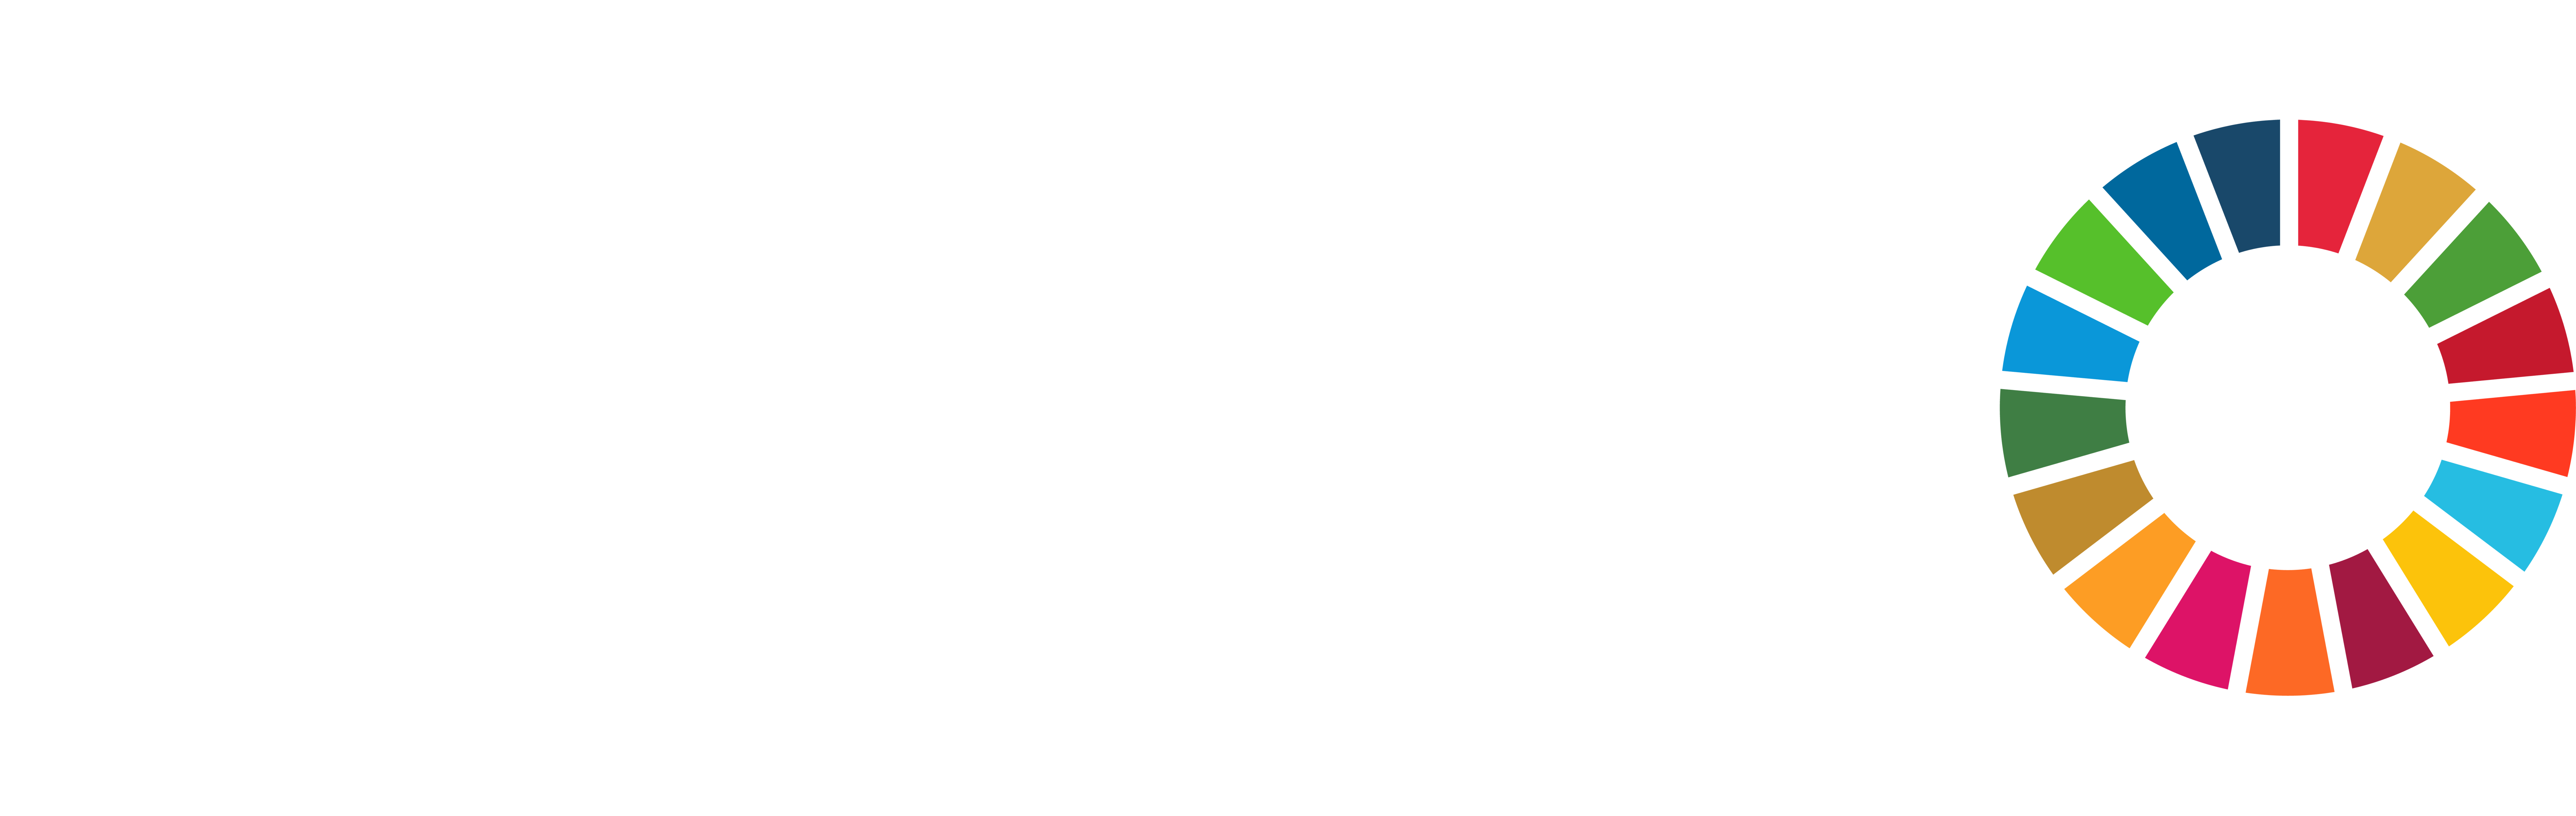 Climate Ambition Generator - Cambio climático y calentamiento global 21